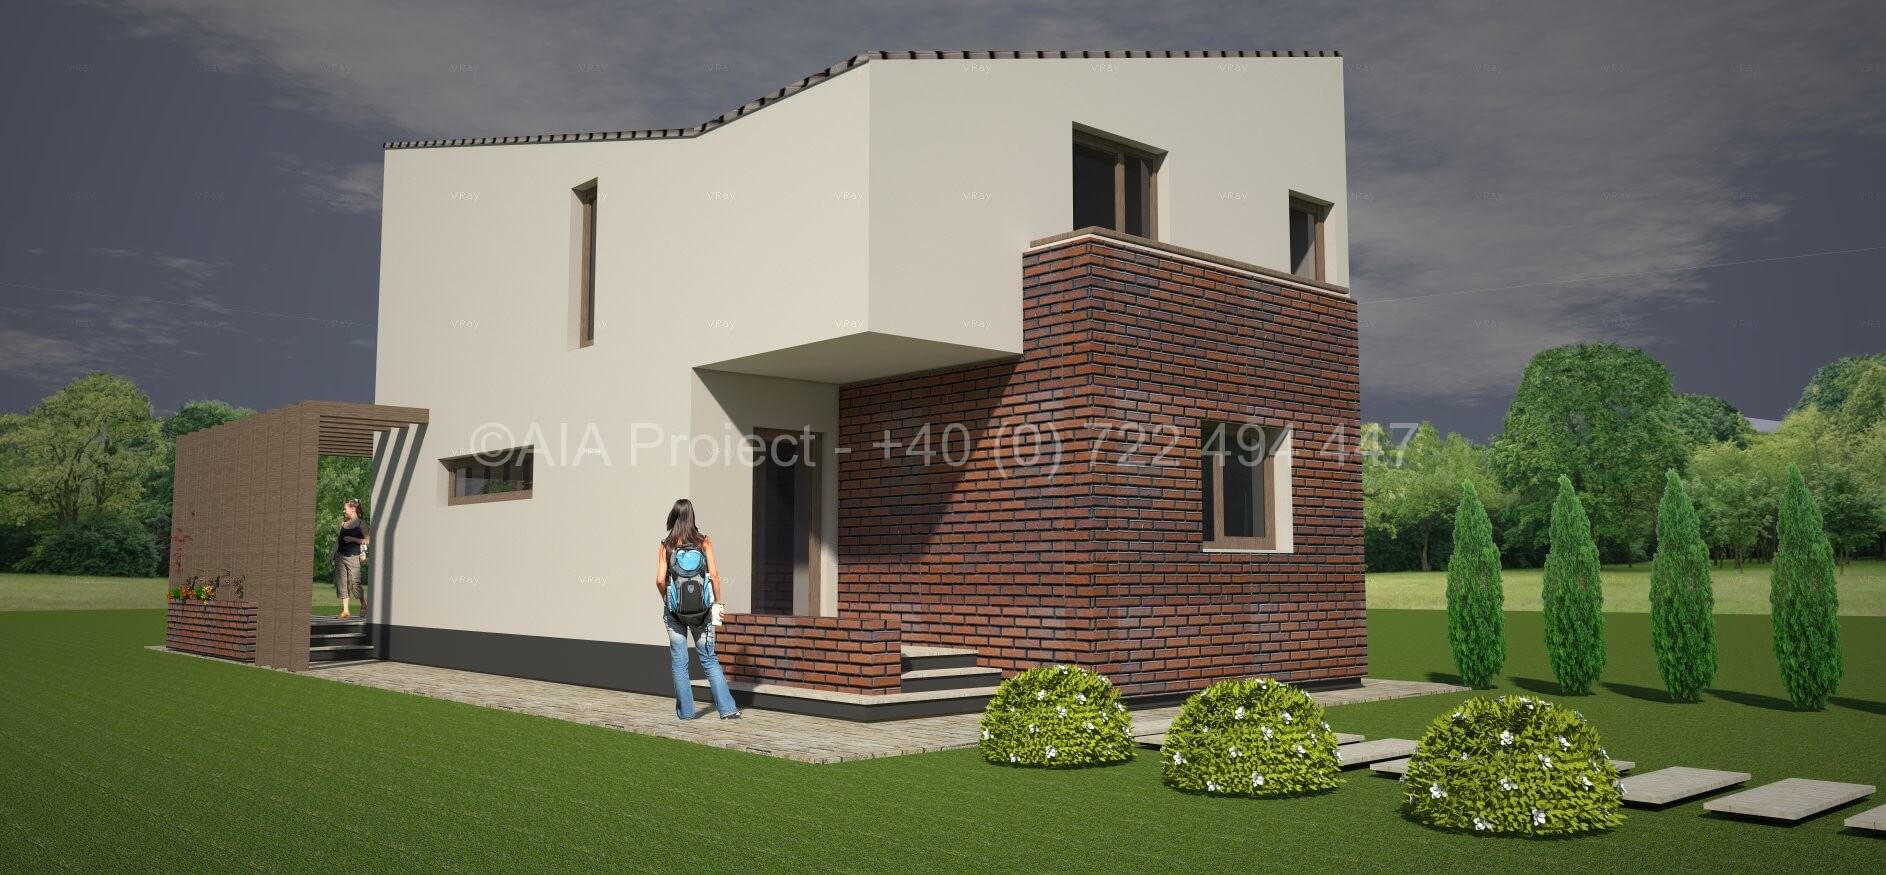 Proiect casa cu mansarda P+M moderna pentru o familie tanara.